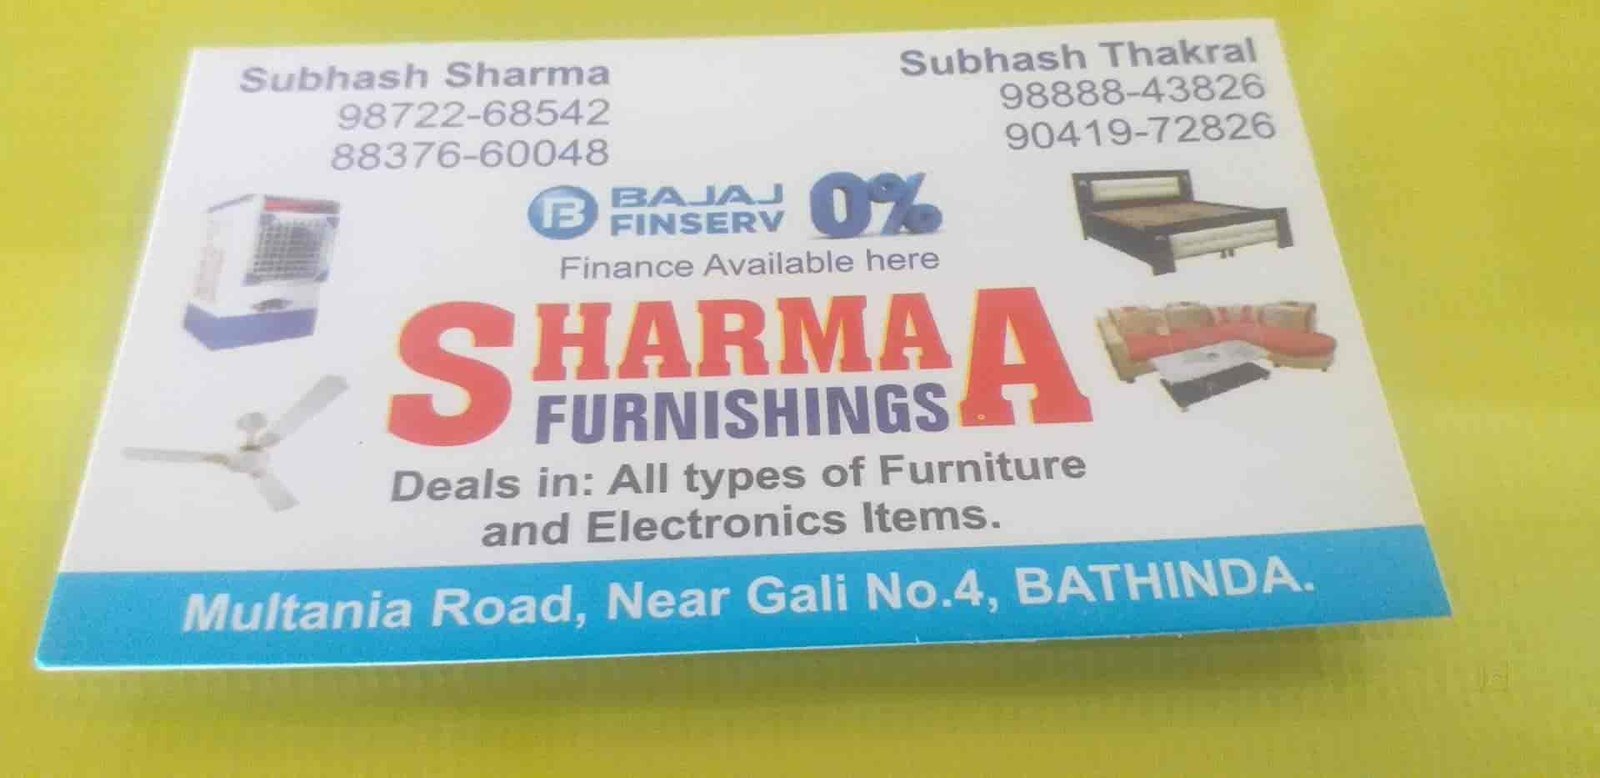 Sharmaa Furniturer